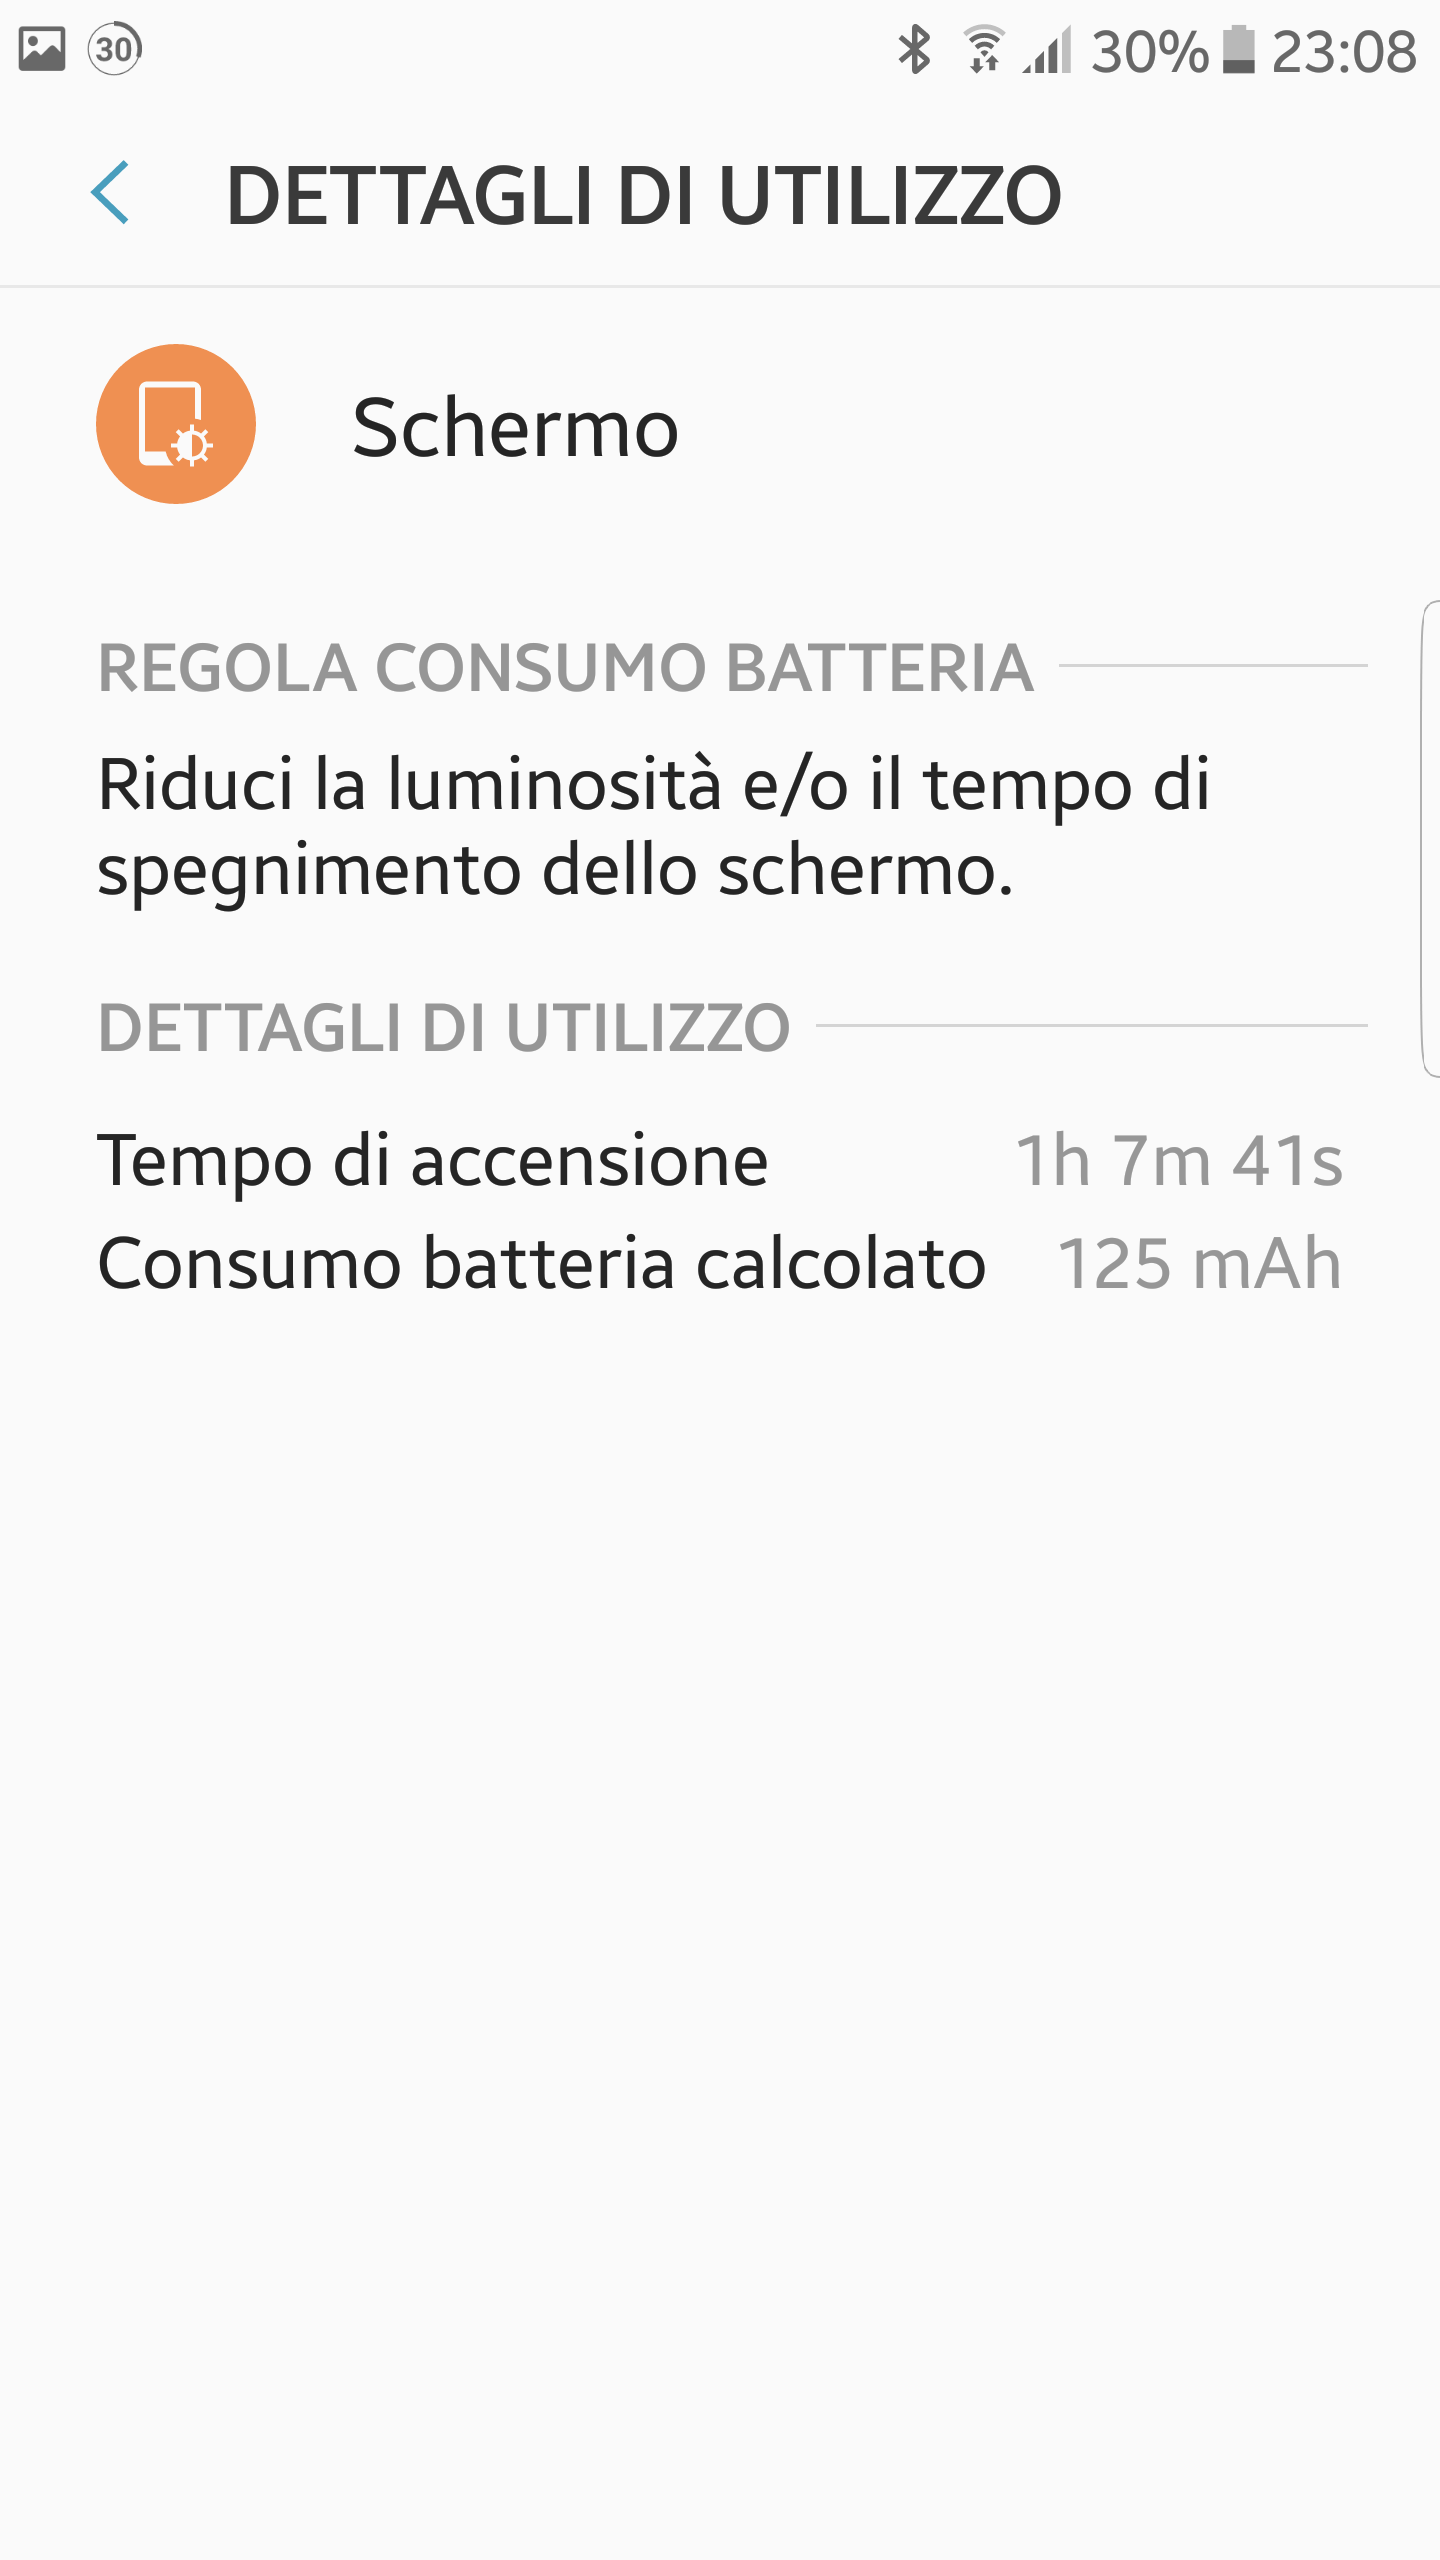 Consumo anomalo batteria a causa di Sistema operativo Android dopo ultimi  aggiornamenti - Galaxy S6 - Samsung Community